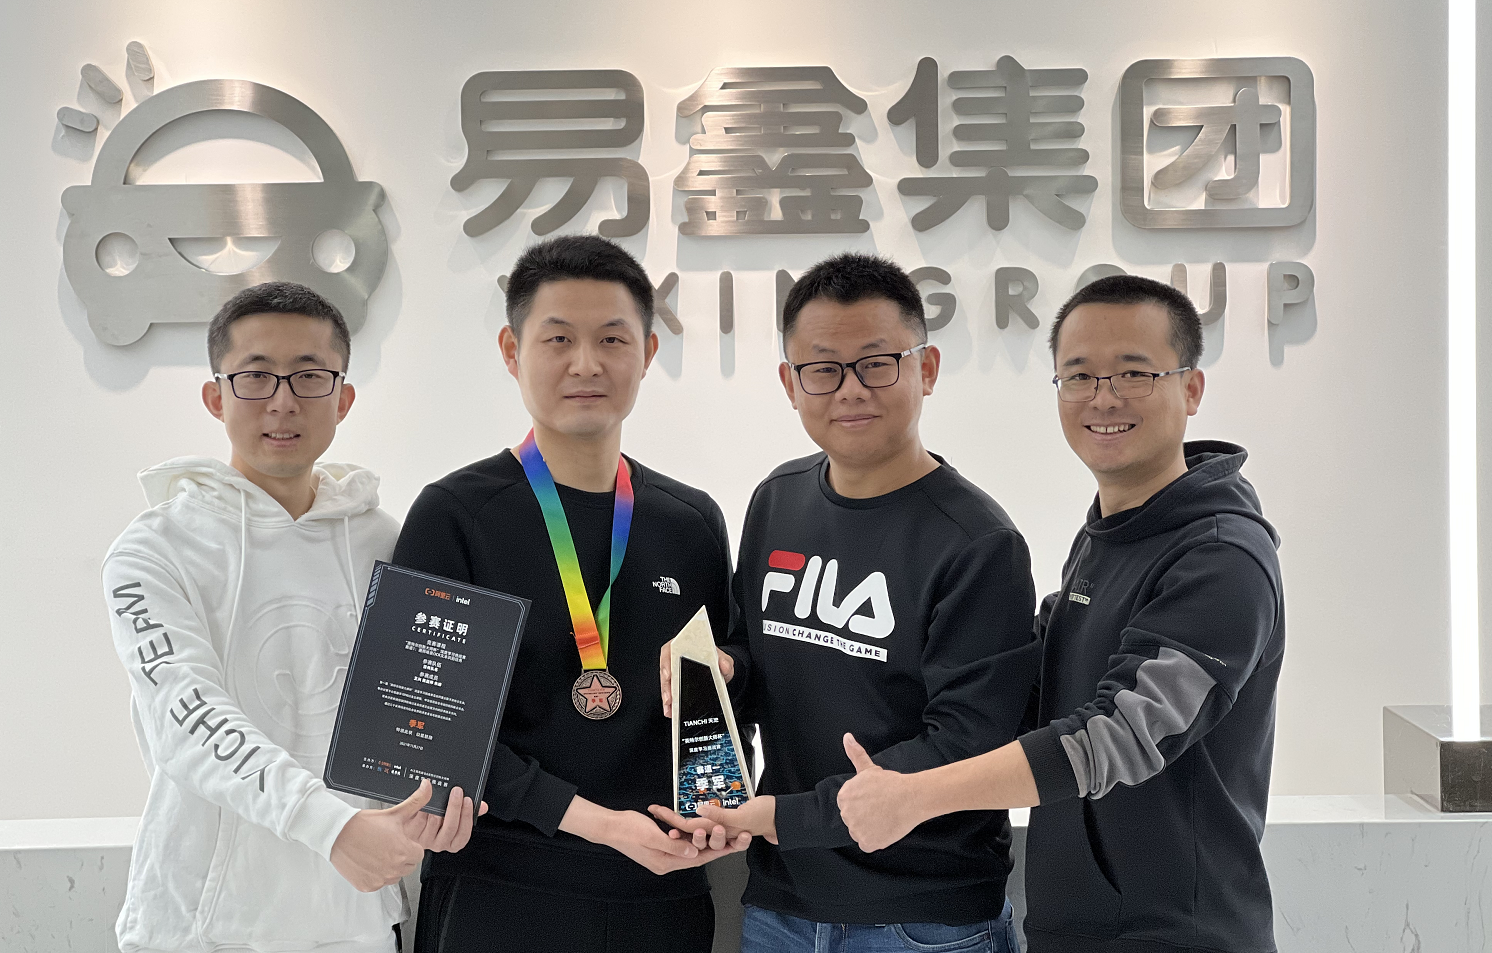 易鑫集团人工智能团队获第一届“英特尔创新大师杯”深度学习挑战赛季军